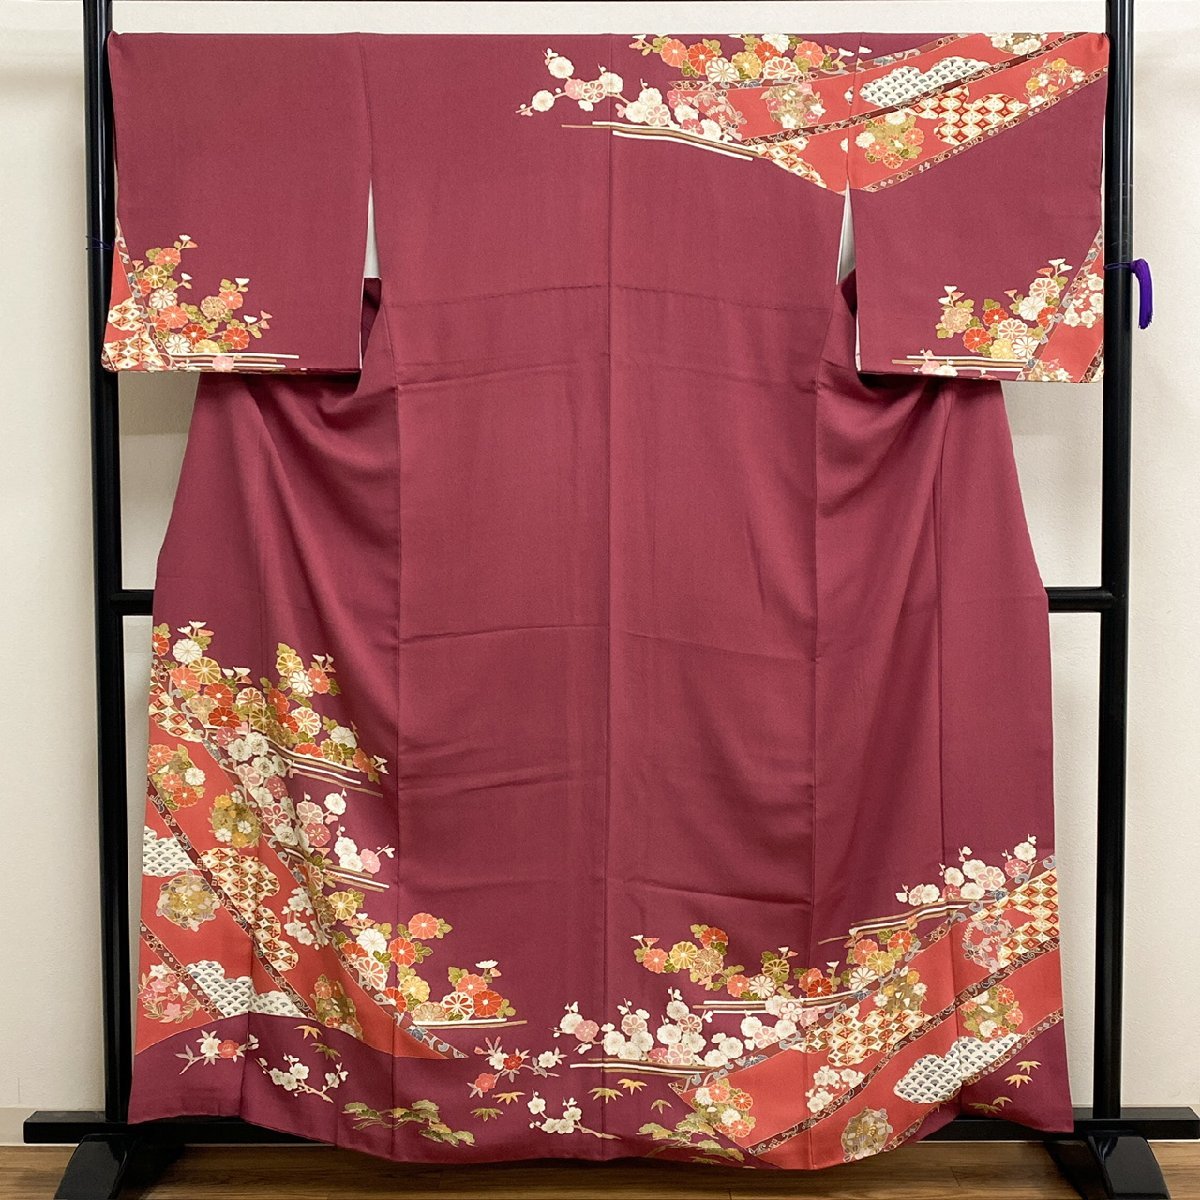 着物月花 金駒刺繍 金彩 品のある花 訪問着 正絹 金糸 共八掛 ガード加工 ki653の画像1